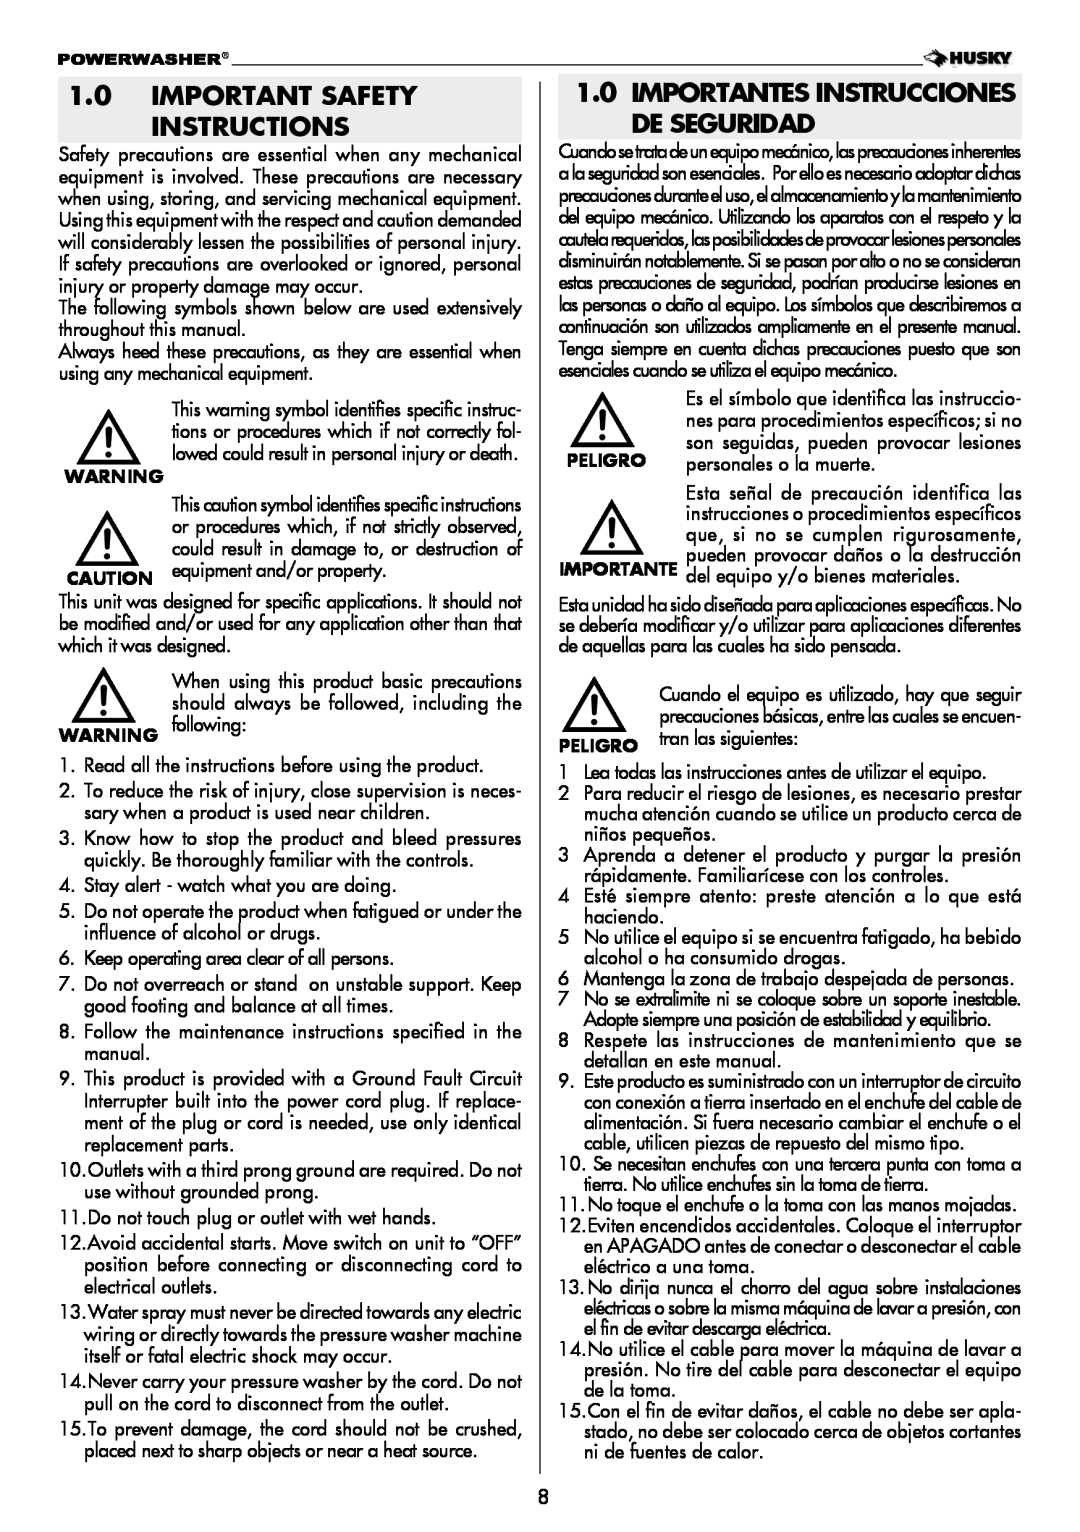 Husky H2000 warranty Important Safety Instructions, Importantes Instrucciones De Seguridad 